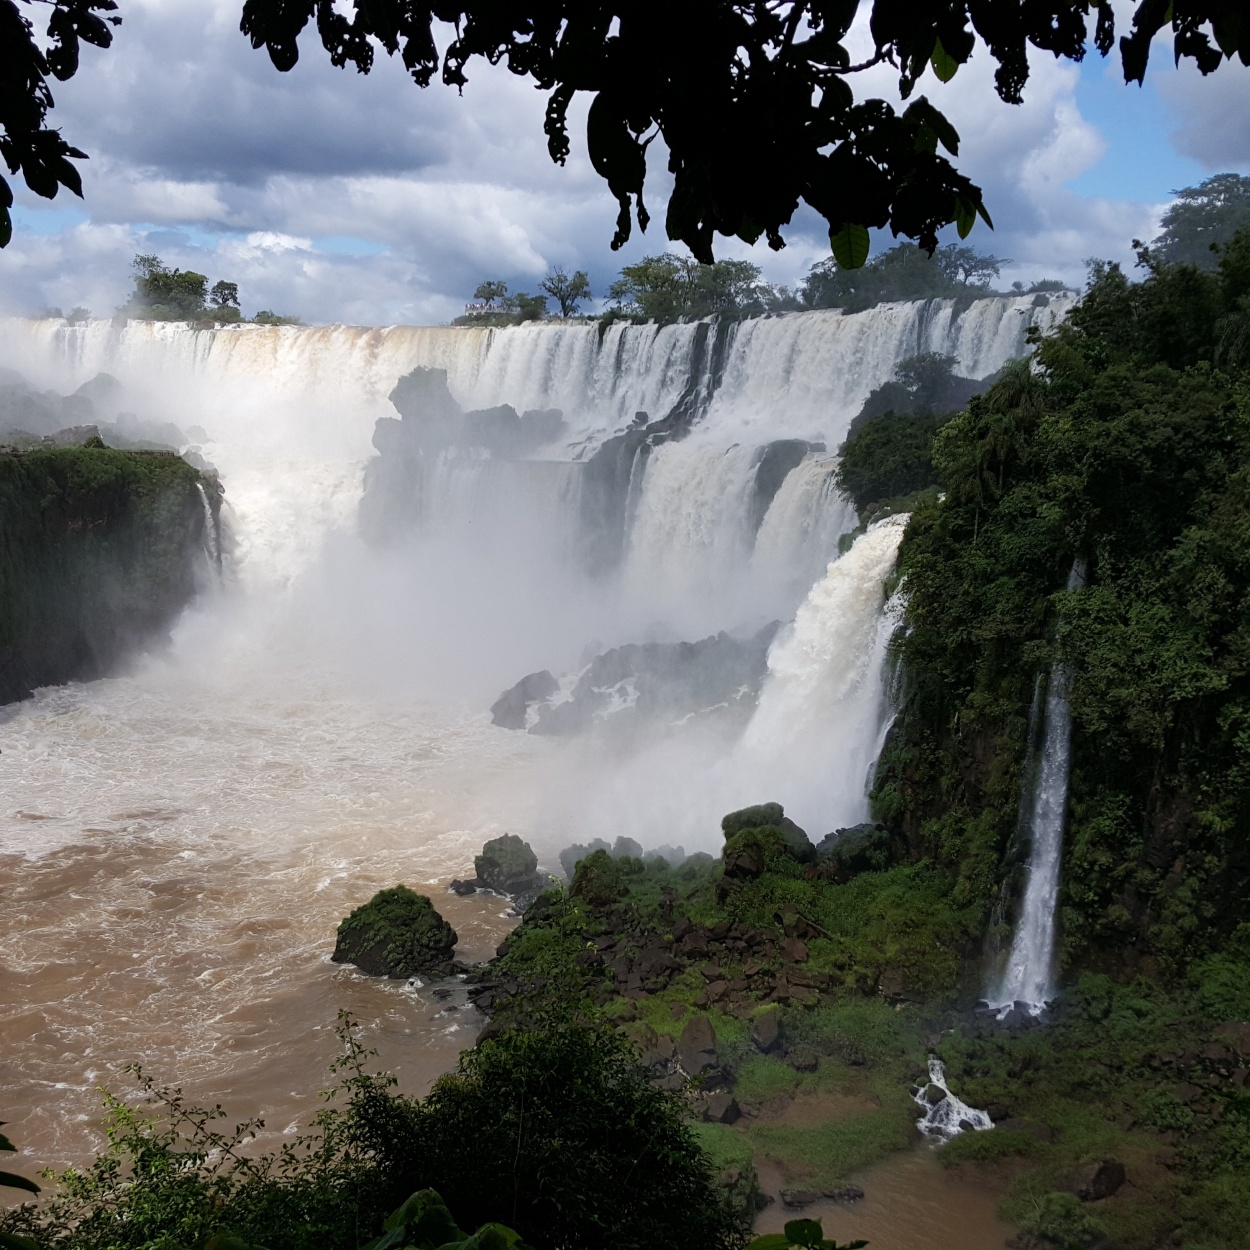 "Parque Nacional Iguaz." de Matias Etchegaray